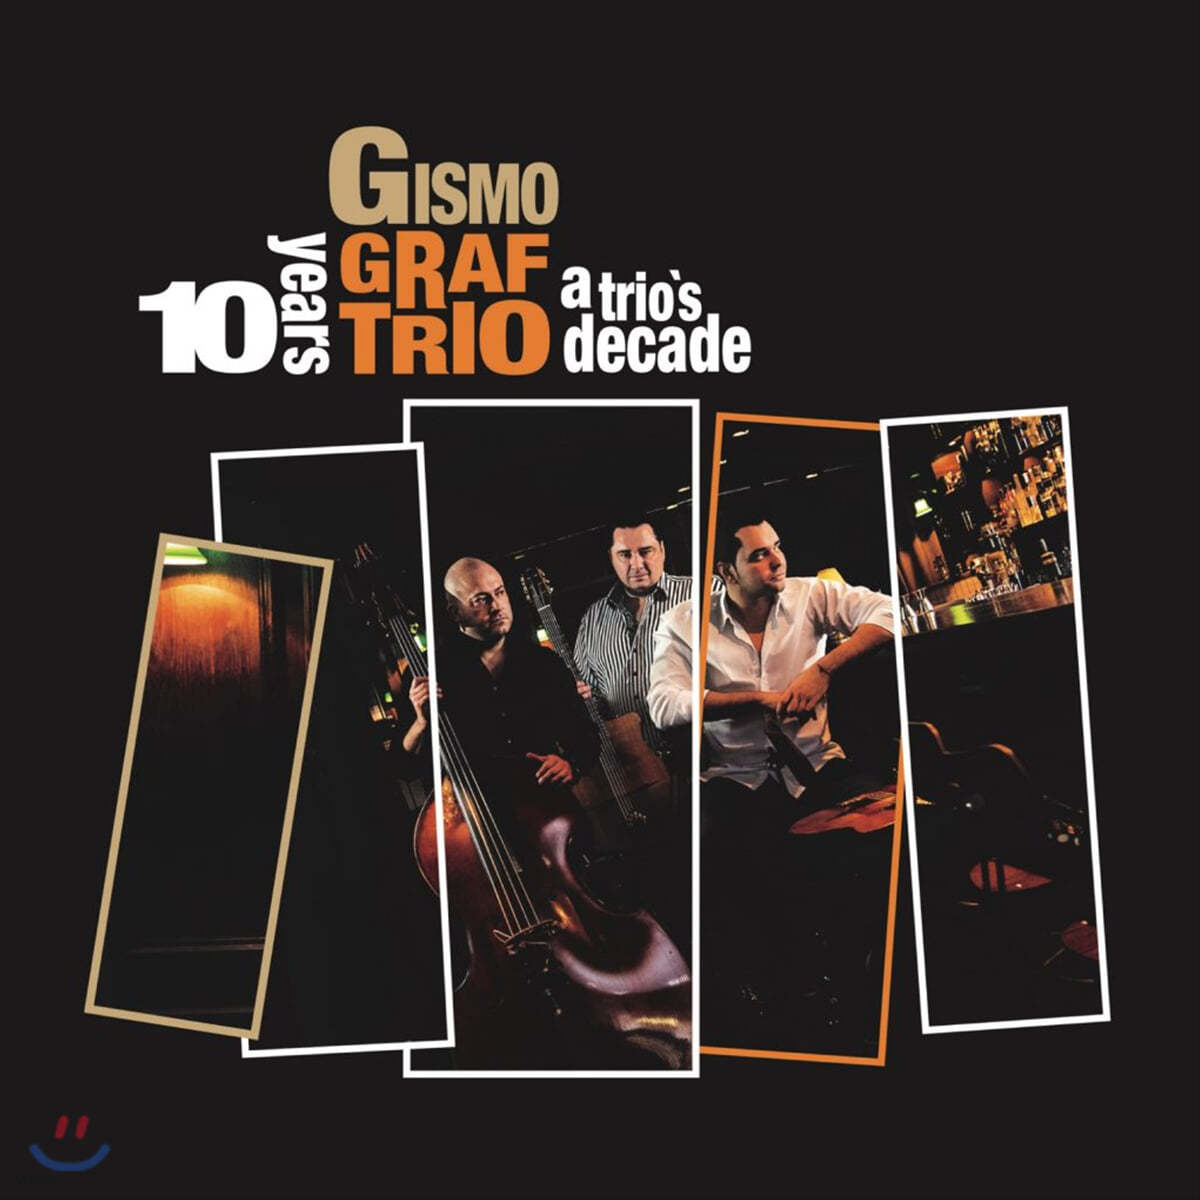 Gismo Graf Trio (기스모 그라프 트리오) - A Trio’s Decade